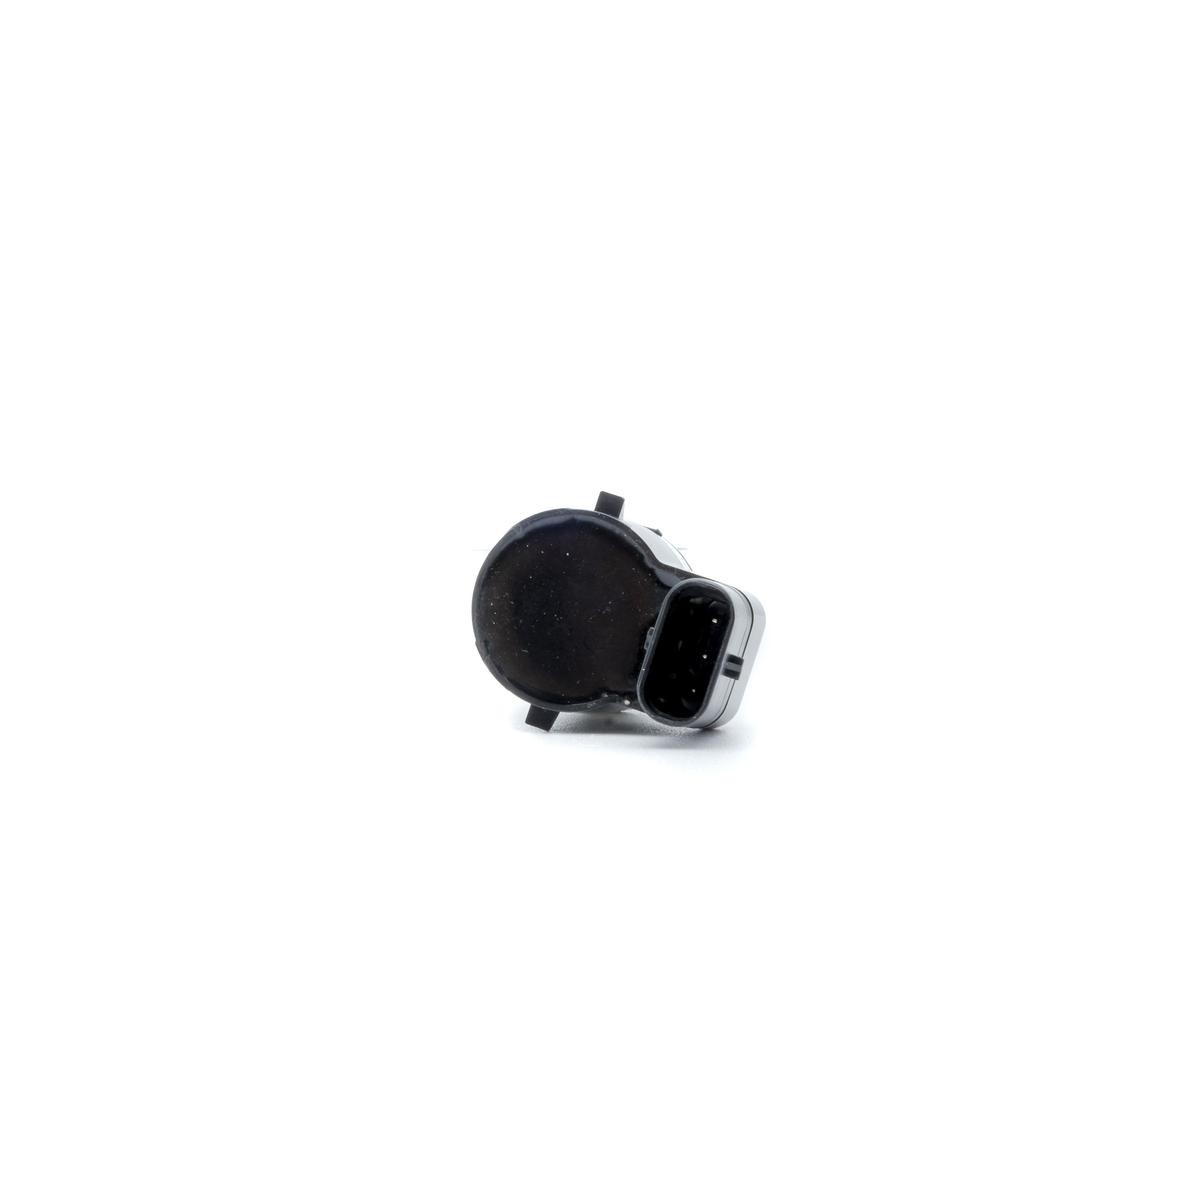 EINPARTS Front, Rear, black, Ultrasonic Sensor Reversing sensors EPPDC45 buy